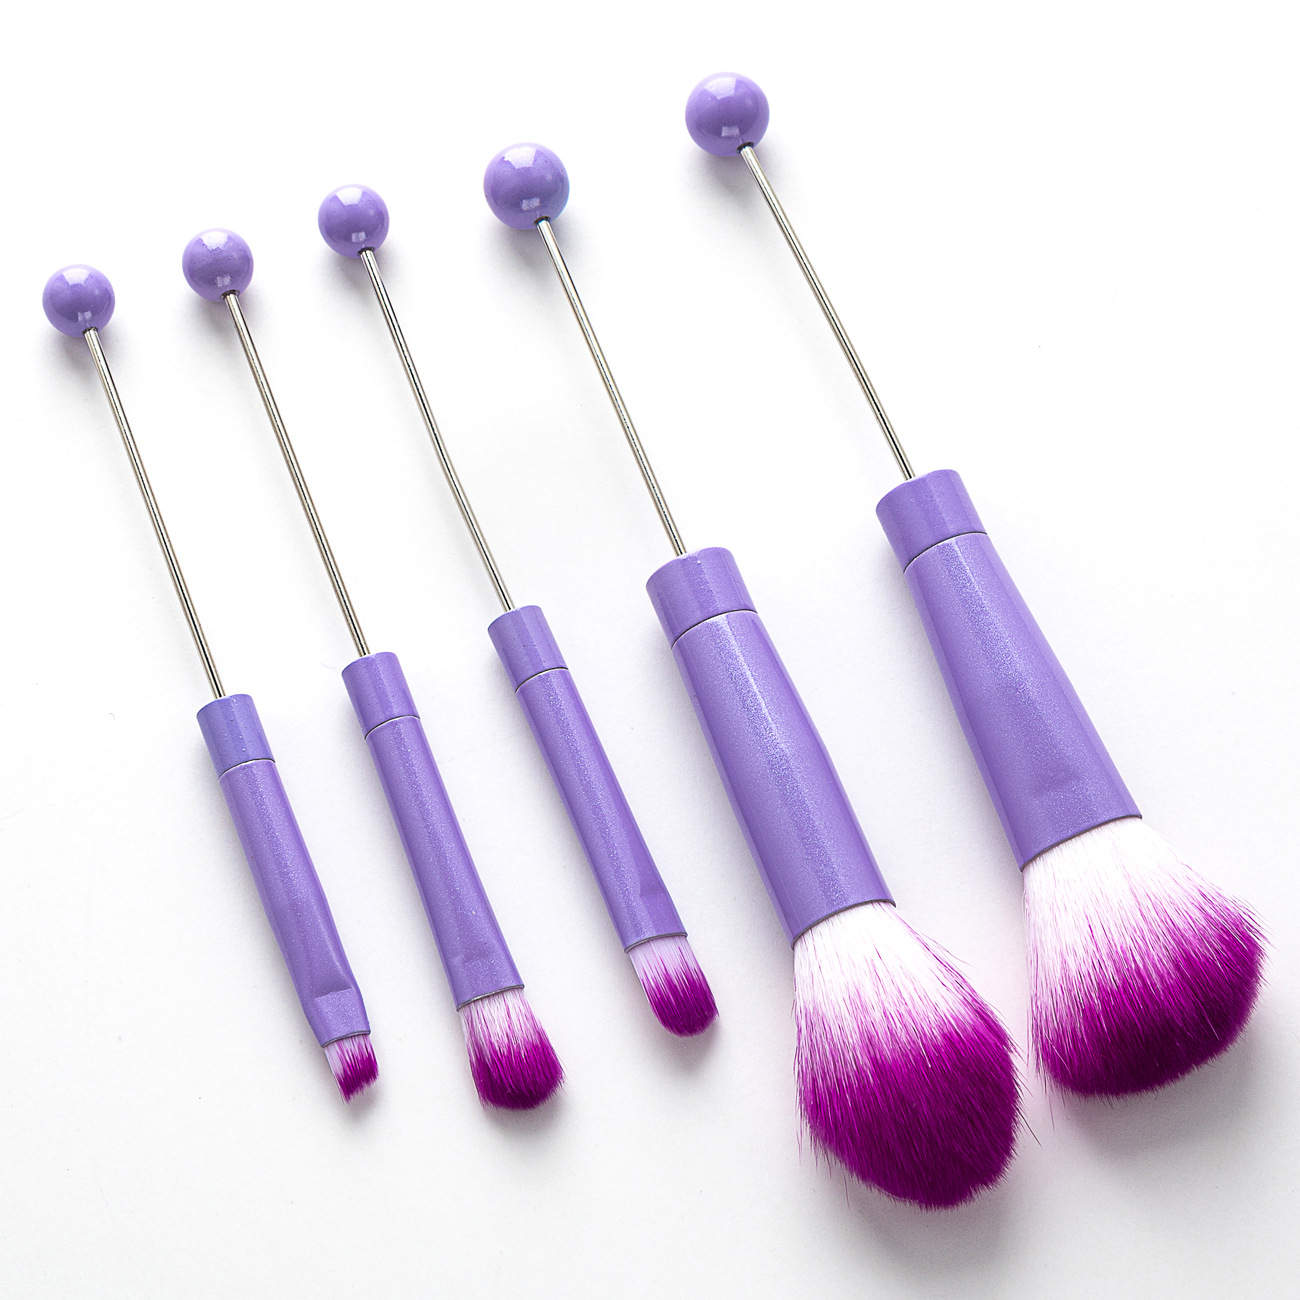 Beadable Makeup Brush Sets